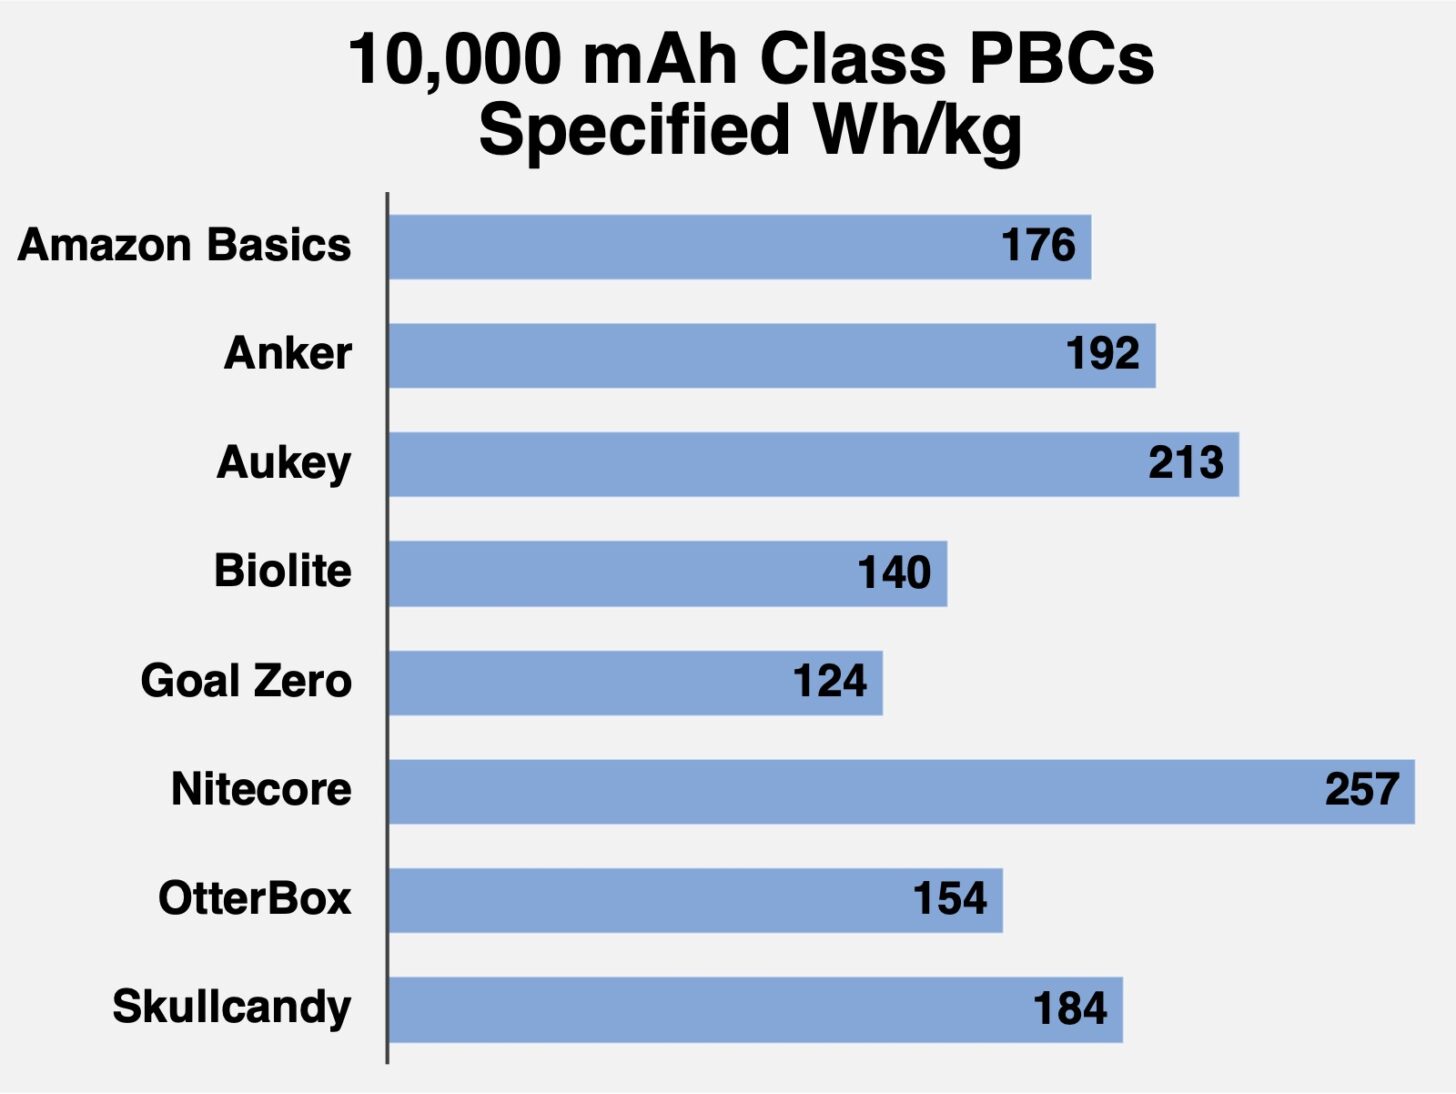 Specified Watt-hours for each 10,000 mAh class PBC. Longer is better.